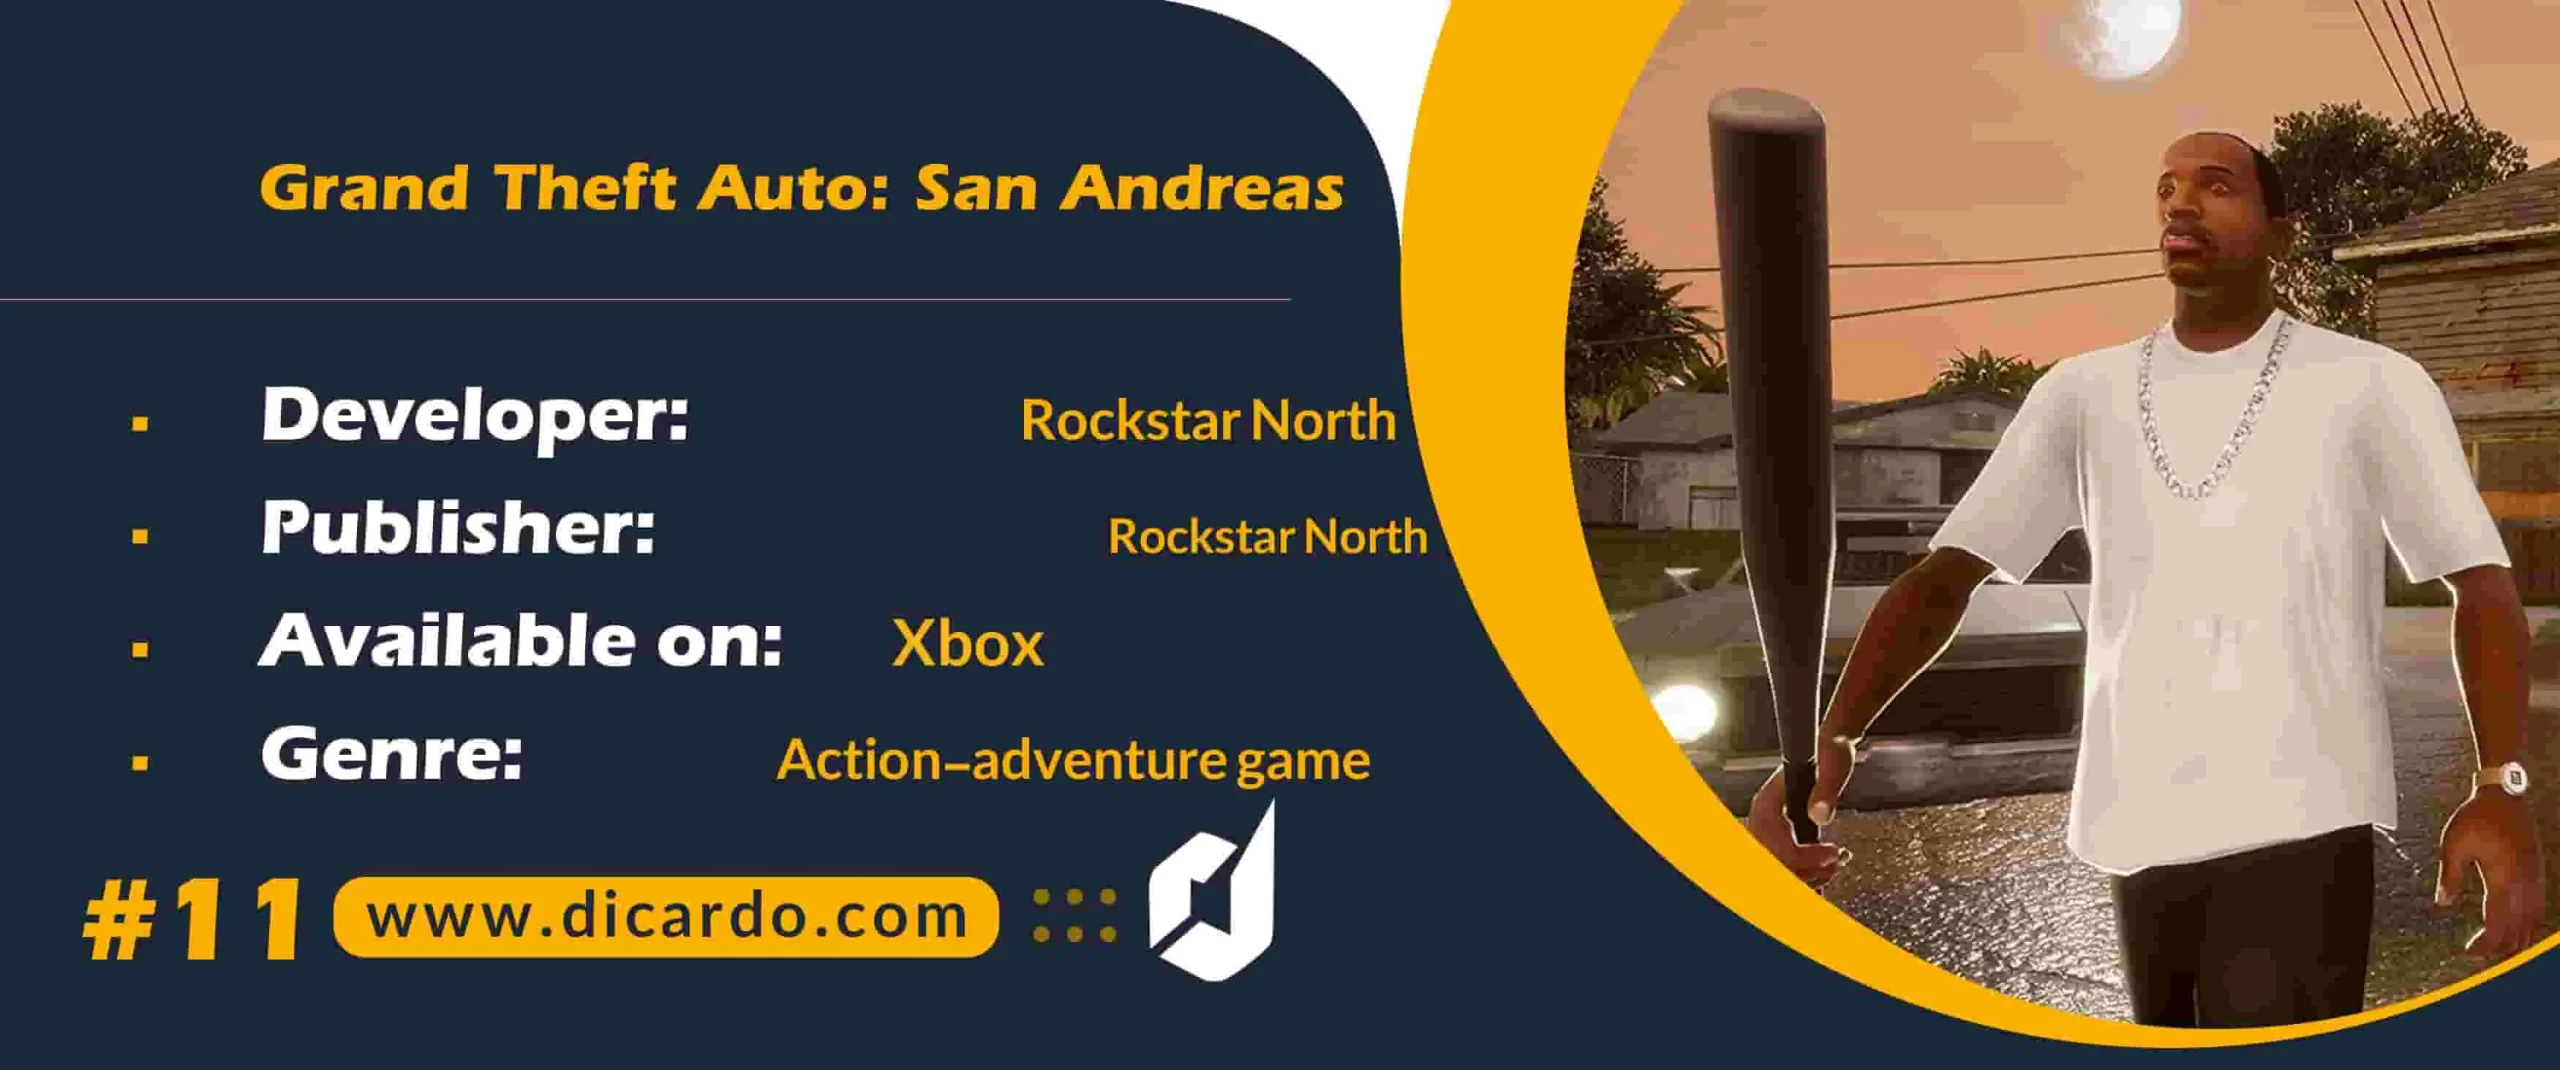 #11 گرند تفت اوتو سان آندریس Grand Theft Auto: San Andreas